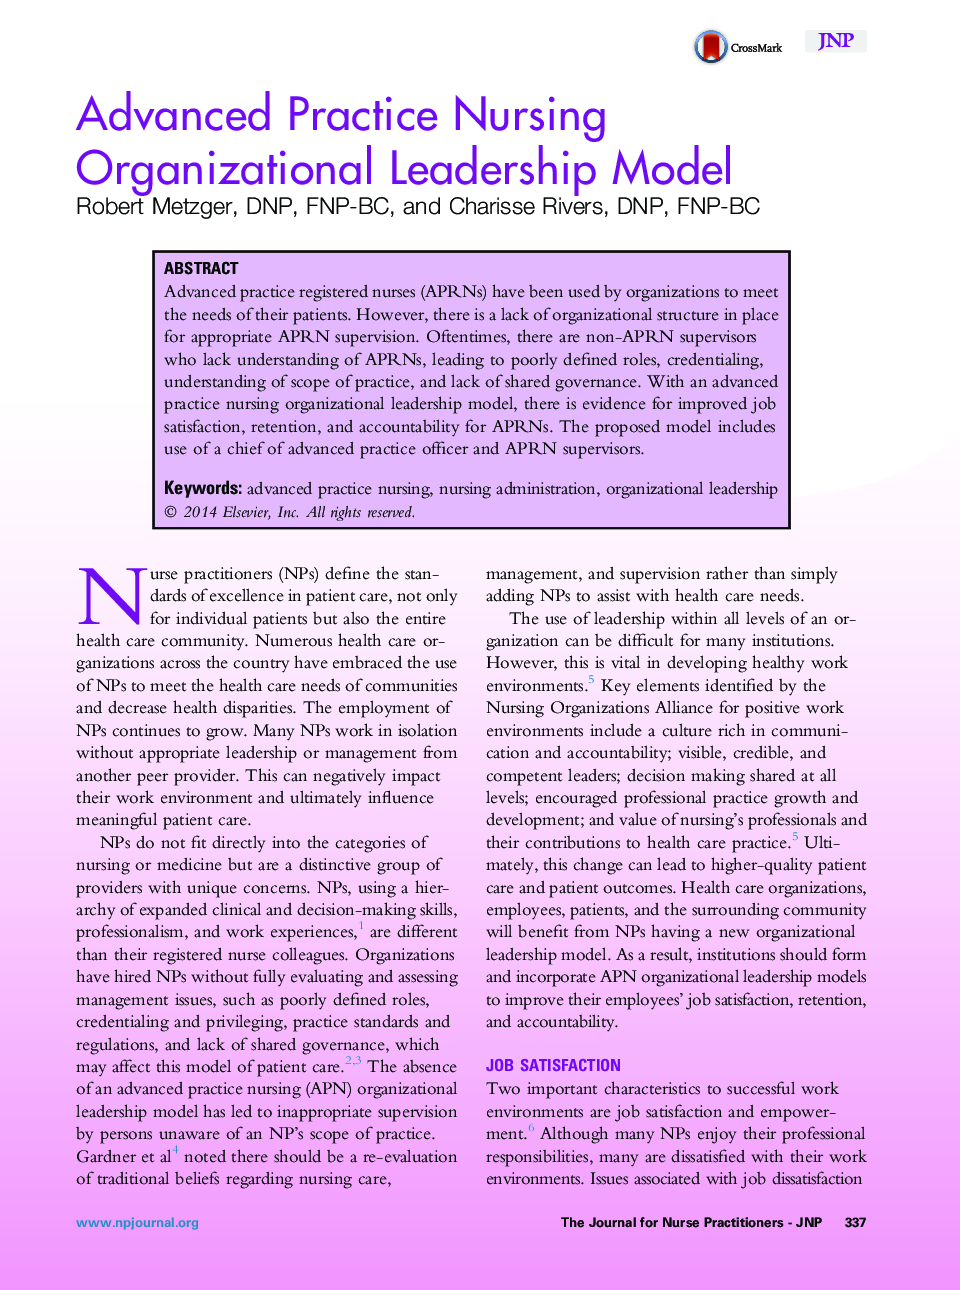 مدل رهبری سازمانی پرستاری پیشرفته 